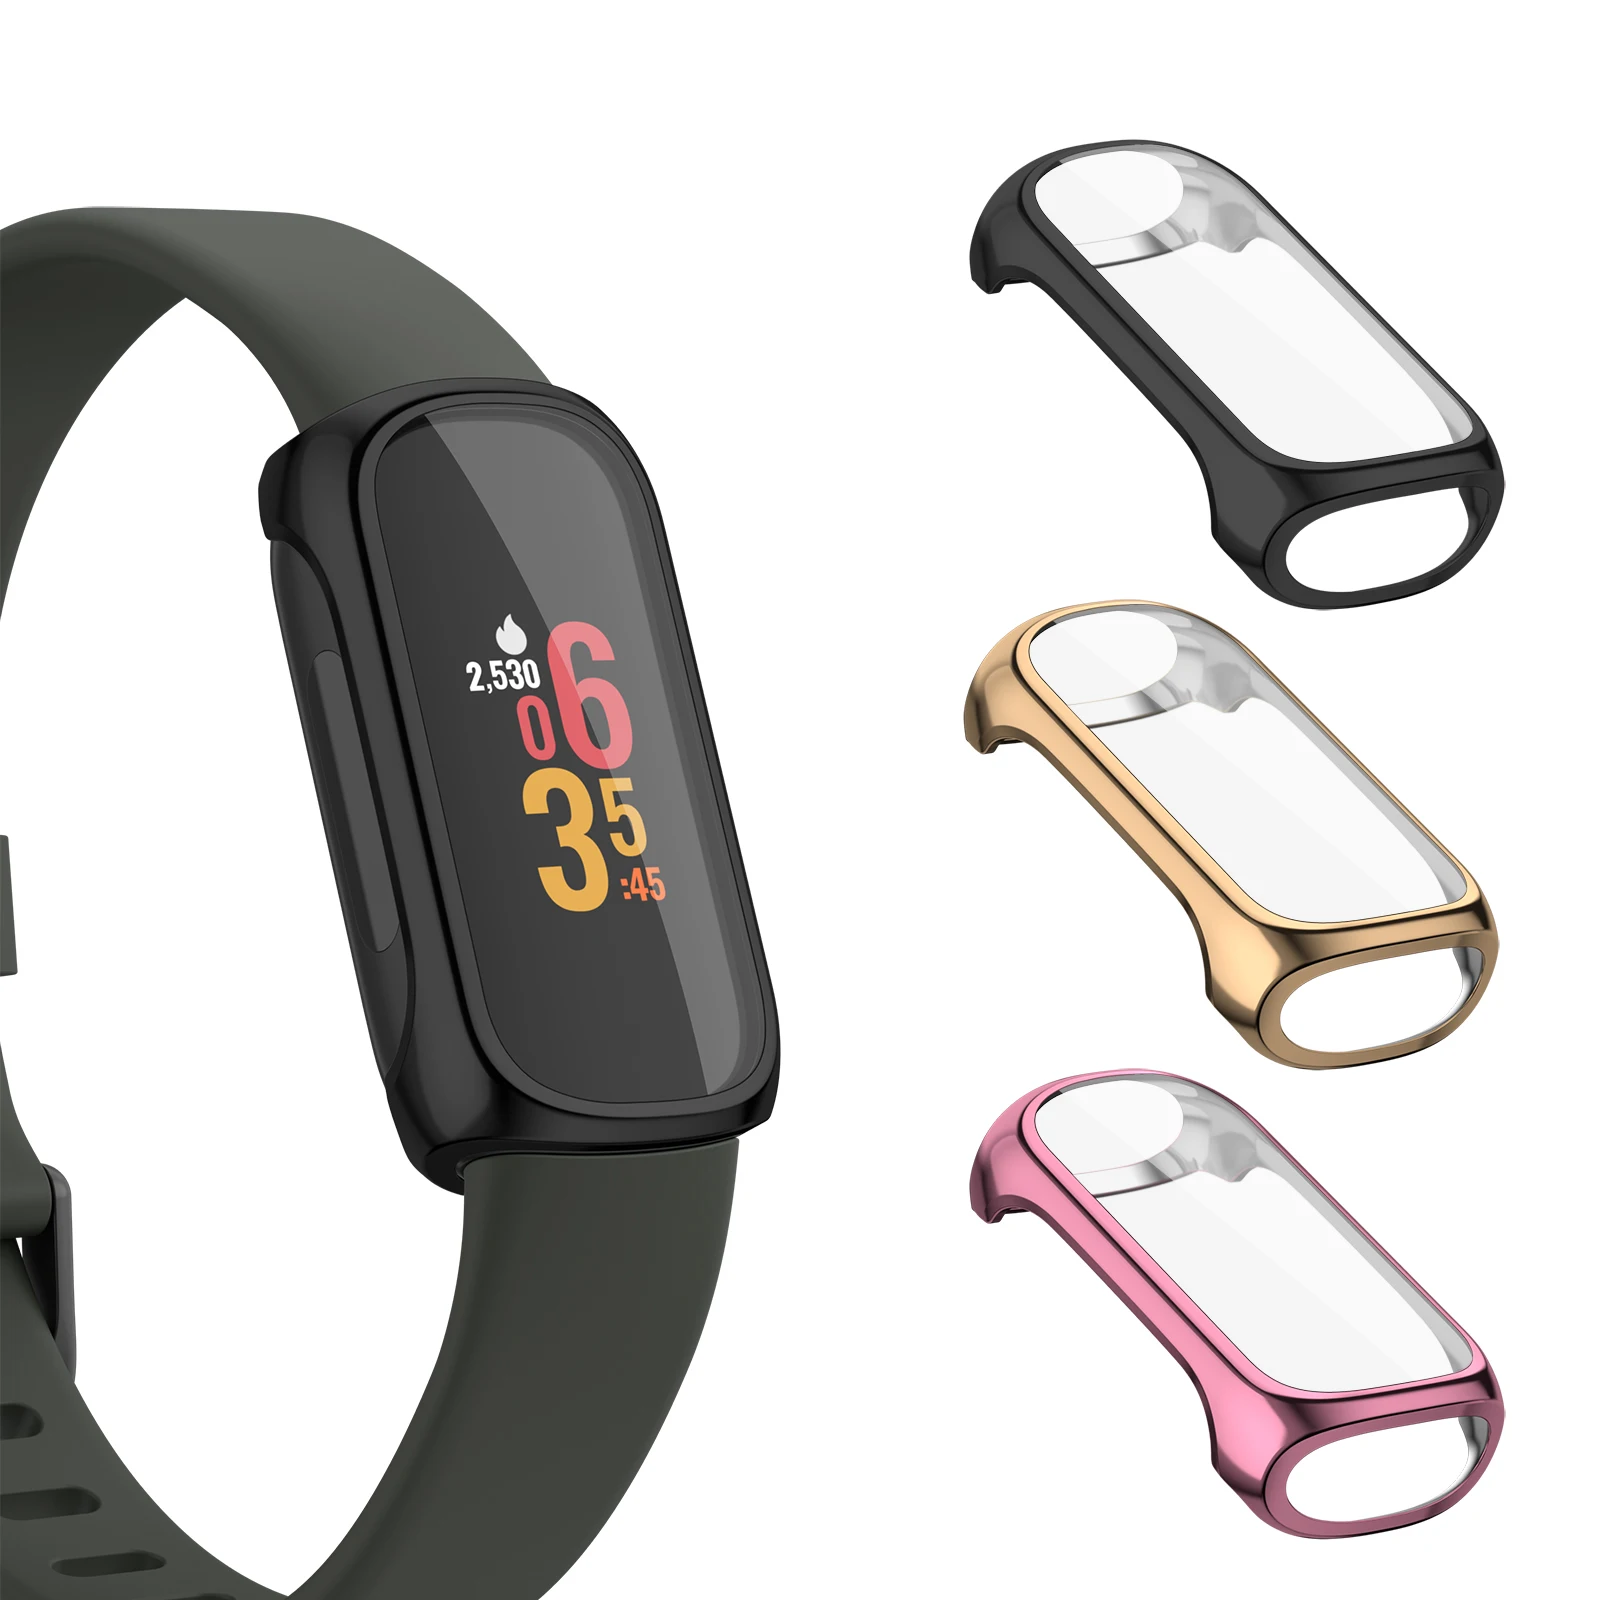 Coque de protection complète en TPU souple pour Fitbit, protection d'écran pour Fitbit inspire 2, 3, coque de protection pare-chocs